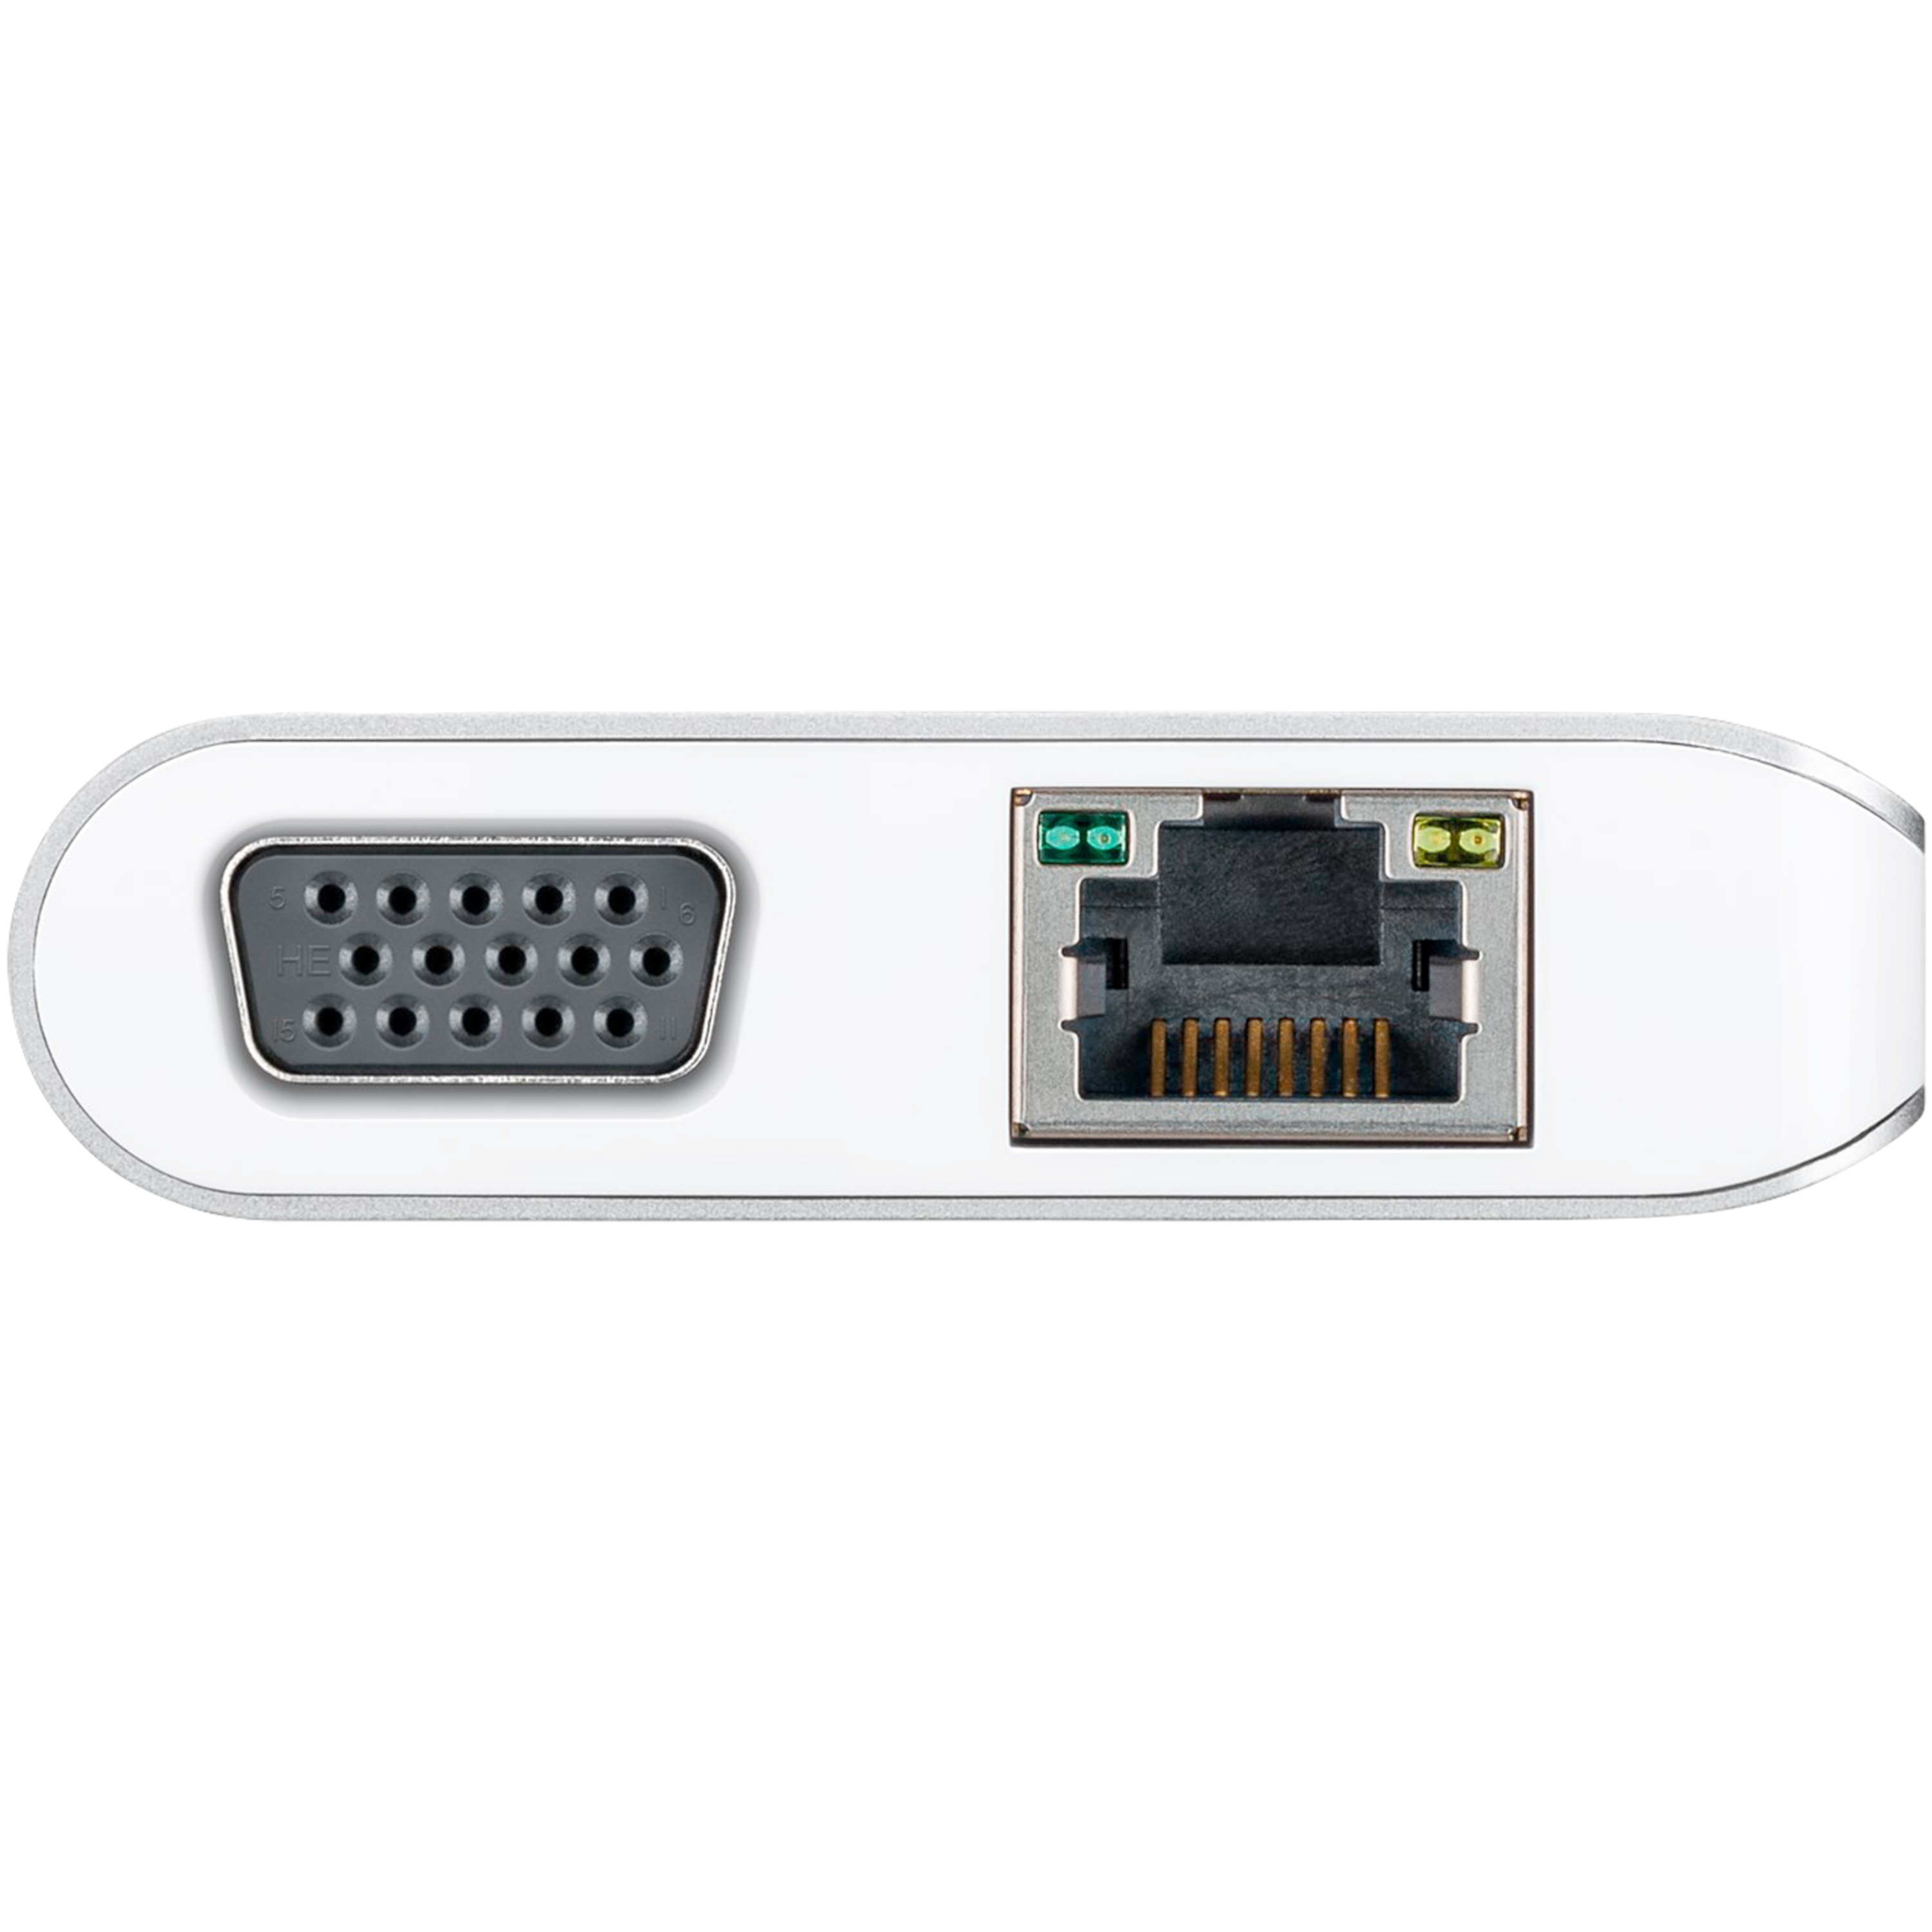 WENTRONIC USB-C™ Premium Multiport-Adapter,  erweitert ein USB-C™ Gerät um weitverbreitesten/gängigsten Anschlüsse, perfekte All-in-One-Lösung